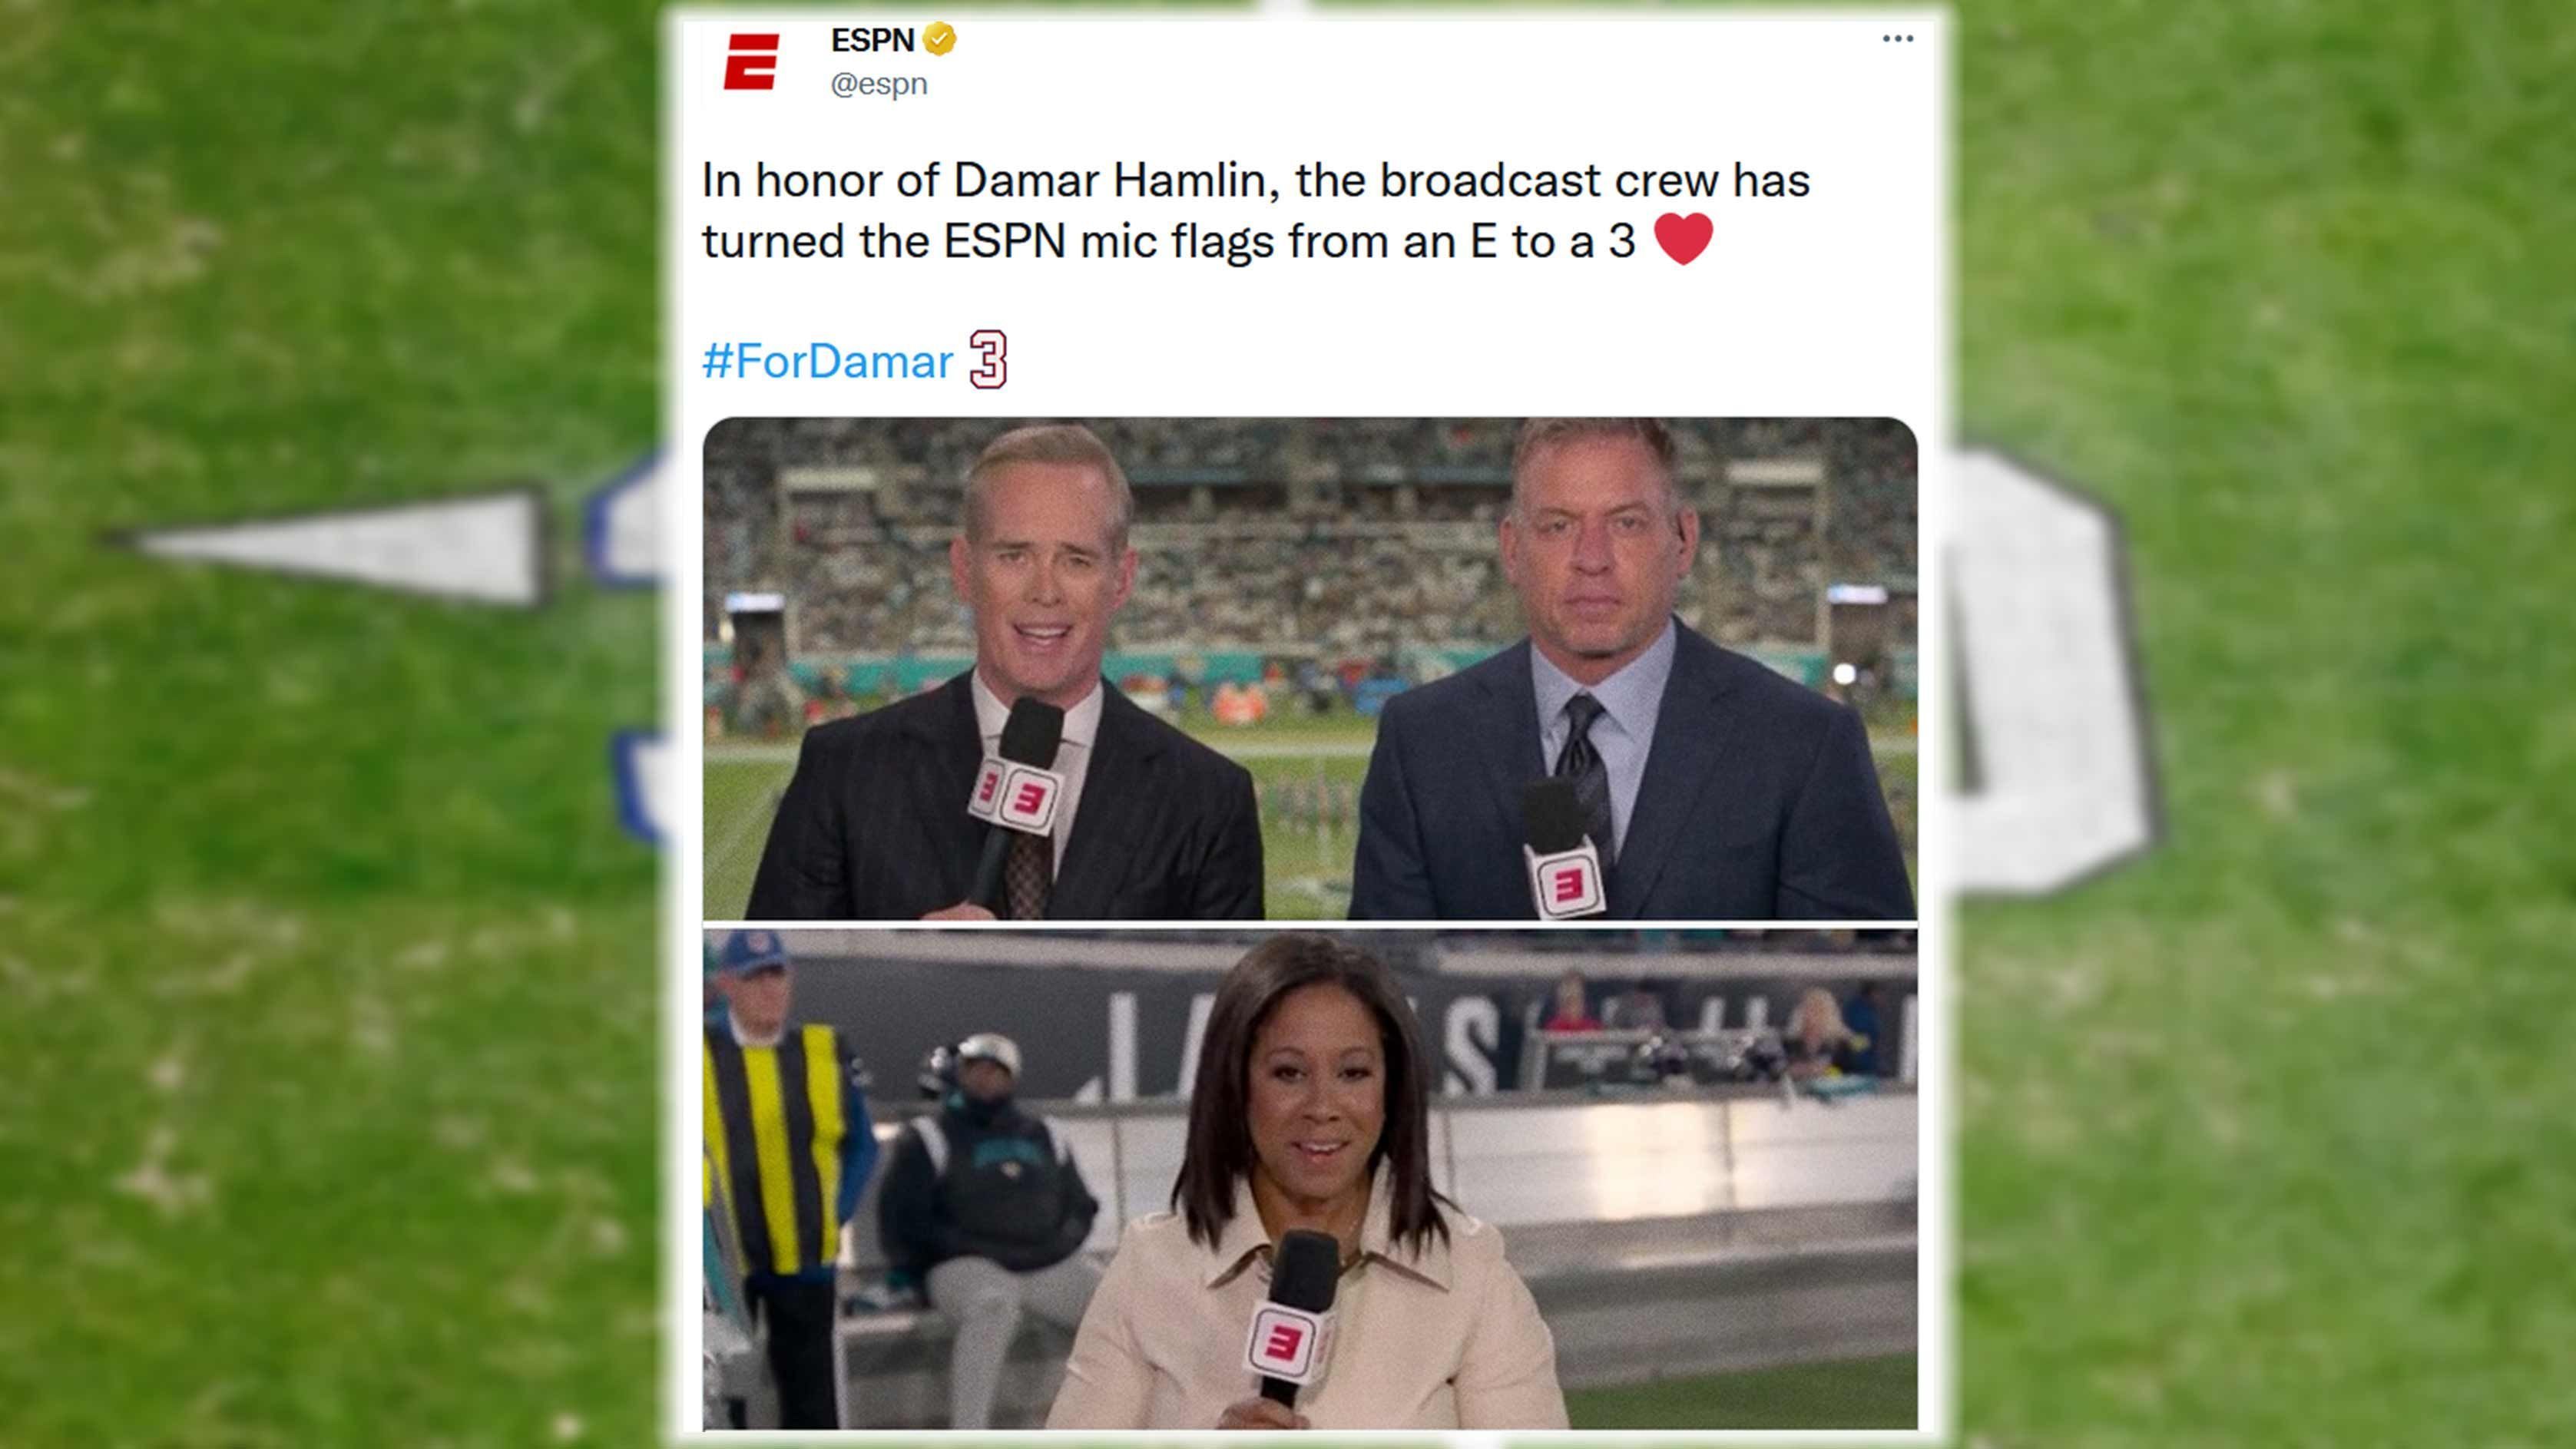 
                <strong>ESPN</strong><br>
                Schöne Geste auch von "ESPN", die das Logo auf den Mikrofonen der Moderatoren und Experten einfach umdrehten. So wurde aus dem "E" eine "3" für die Trikotnummer von Damar Hamlin.
              